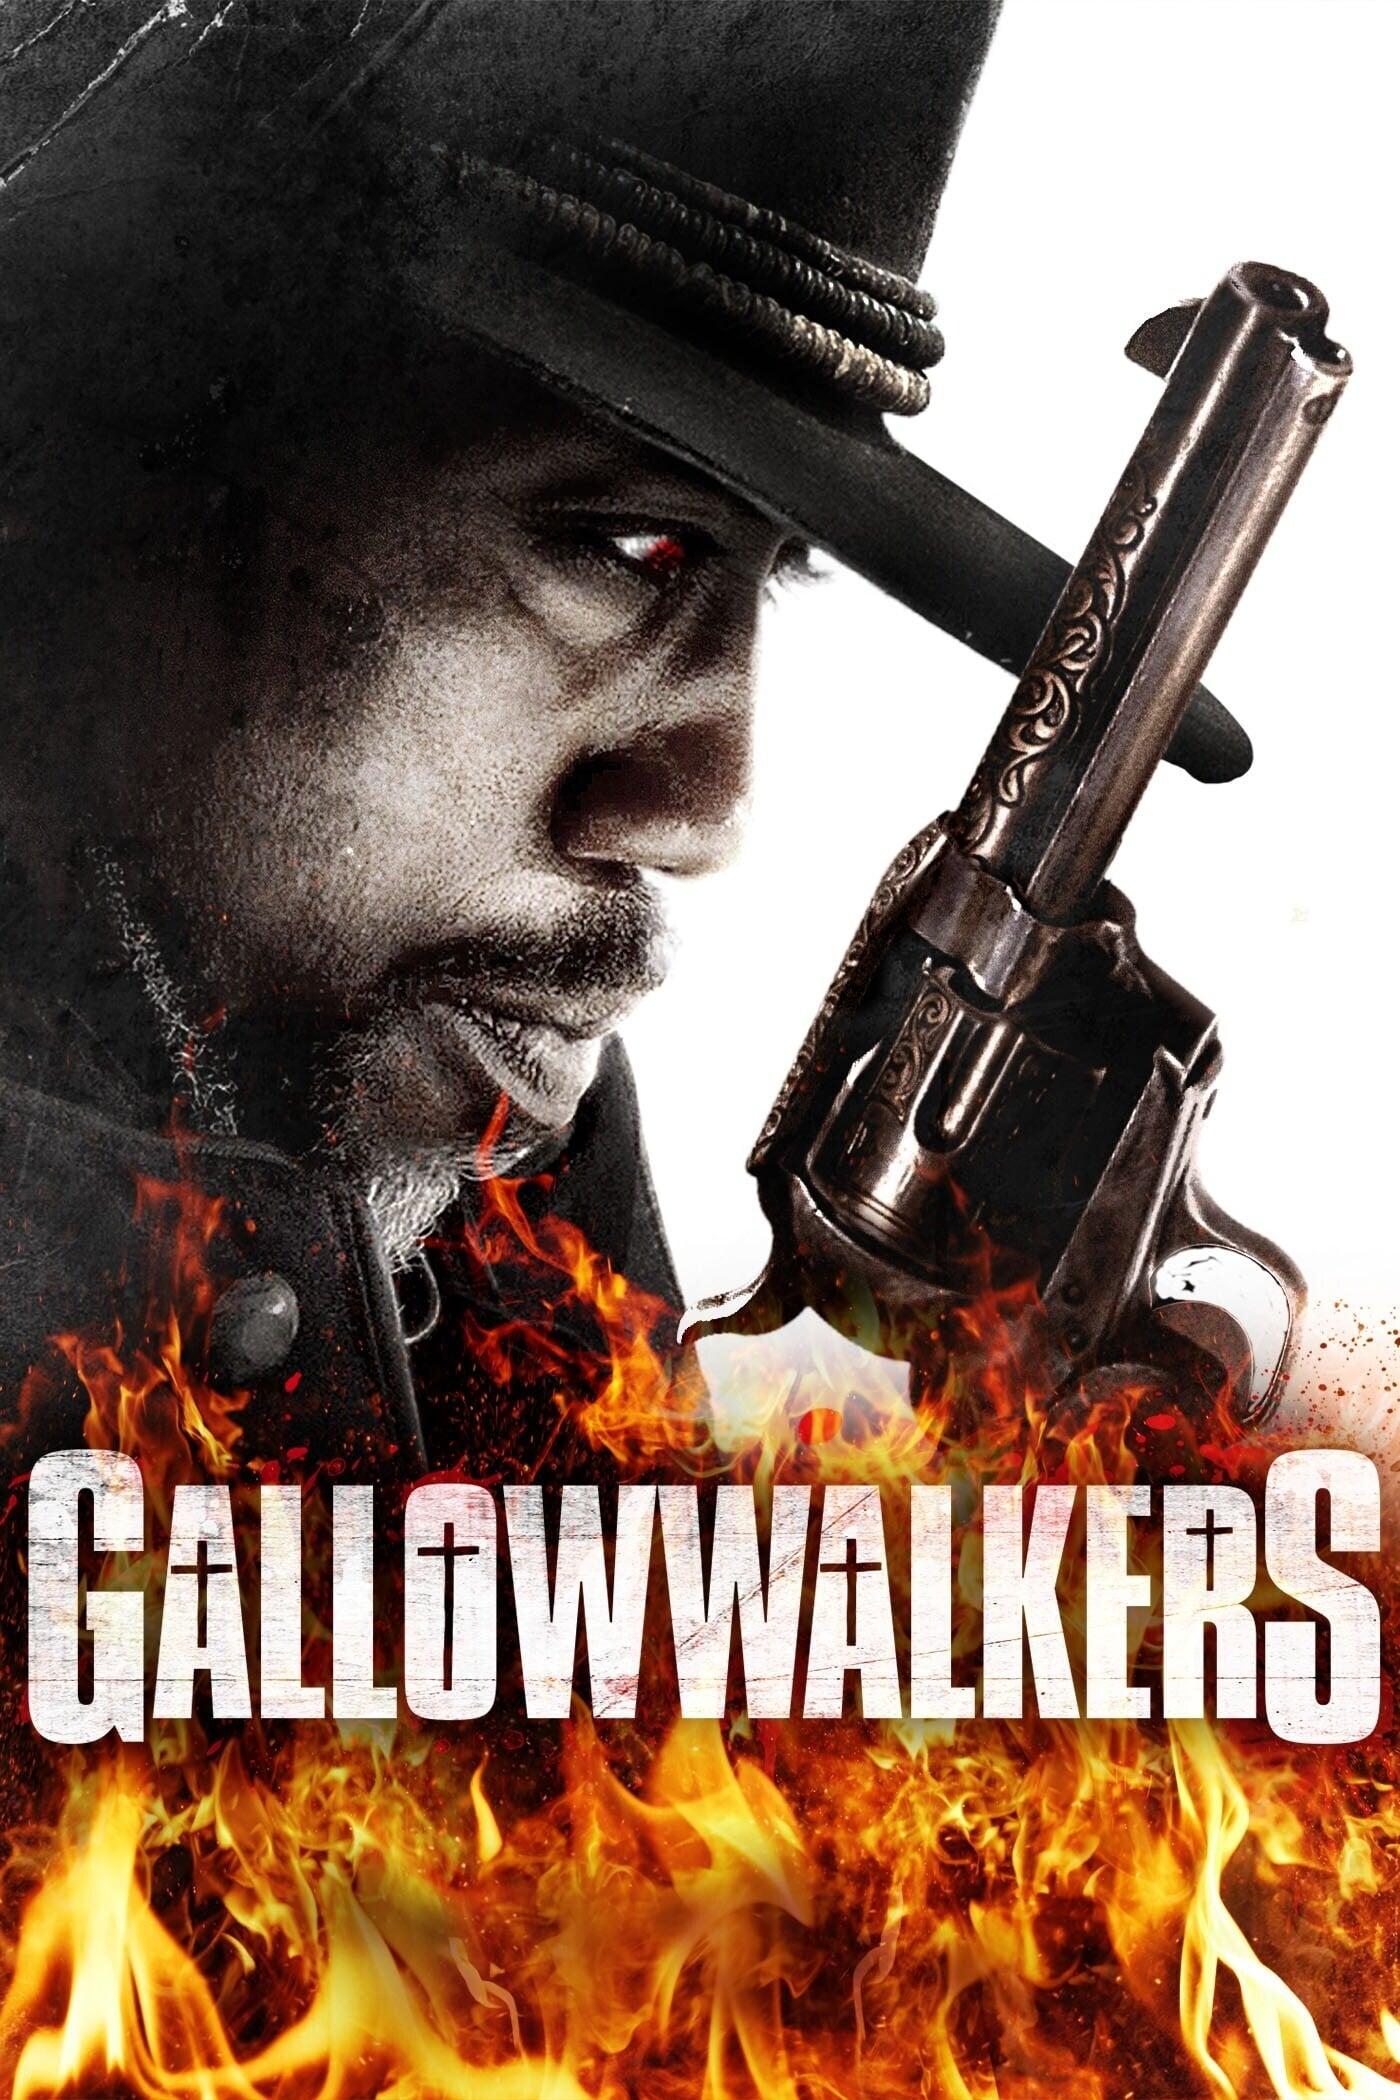 Gallowwalkers poster